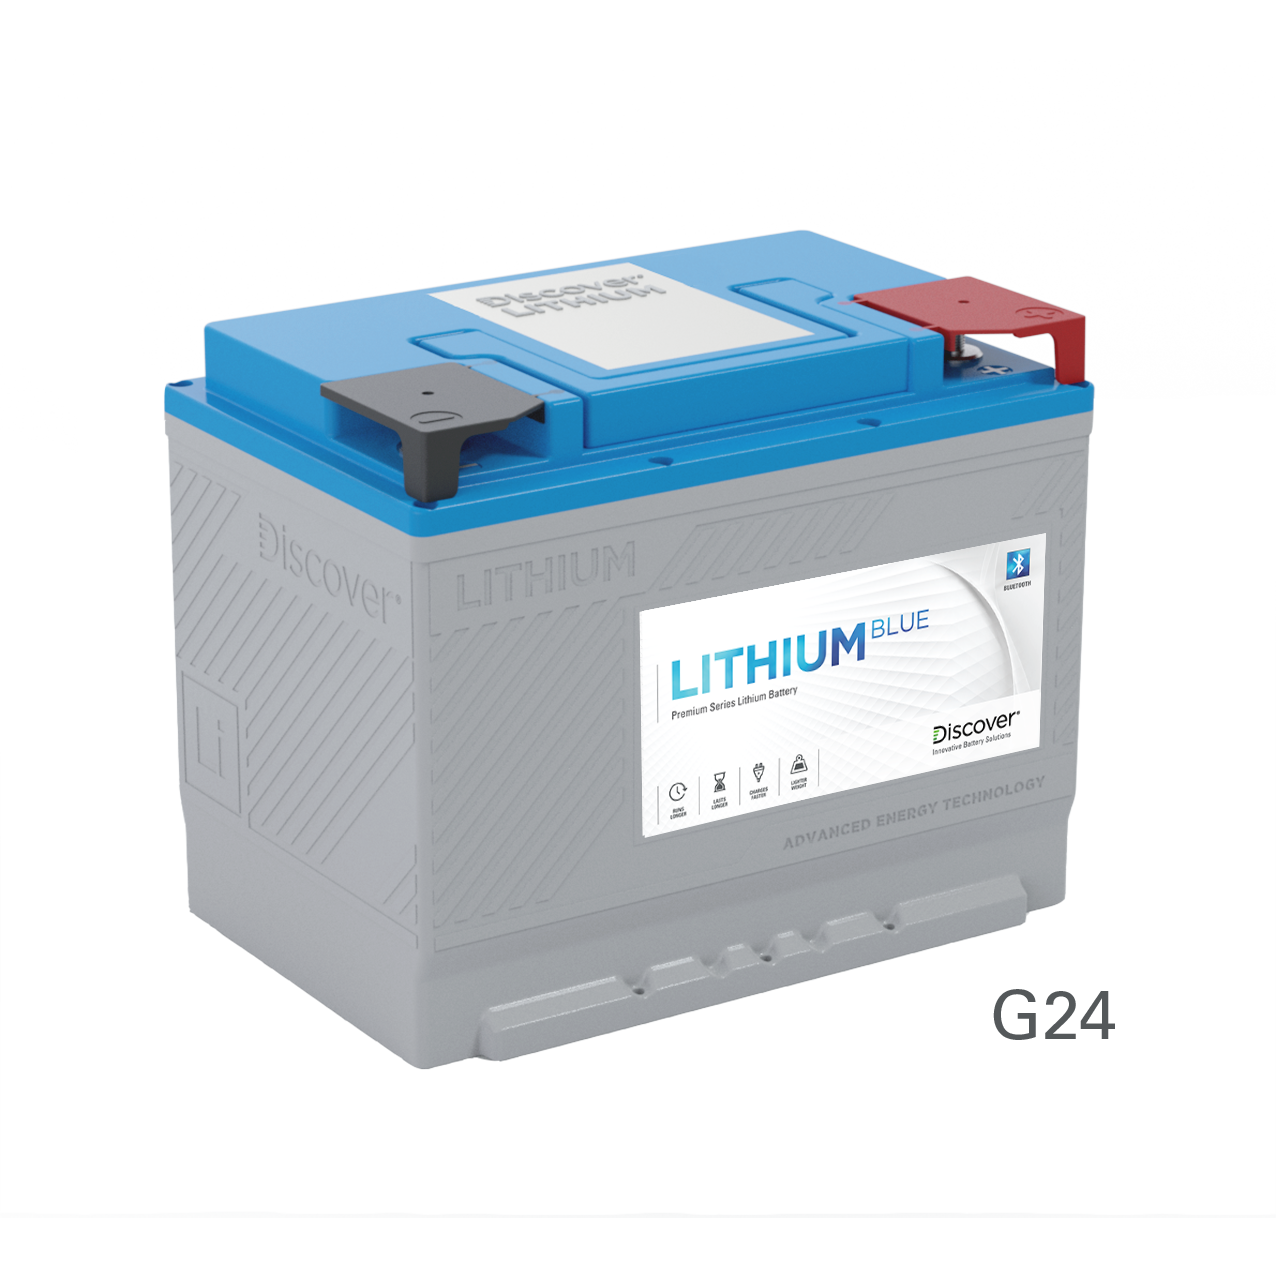 Discover Lihium Blue 36V 30Ah